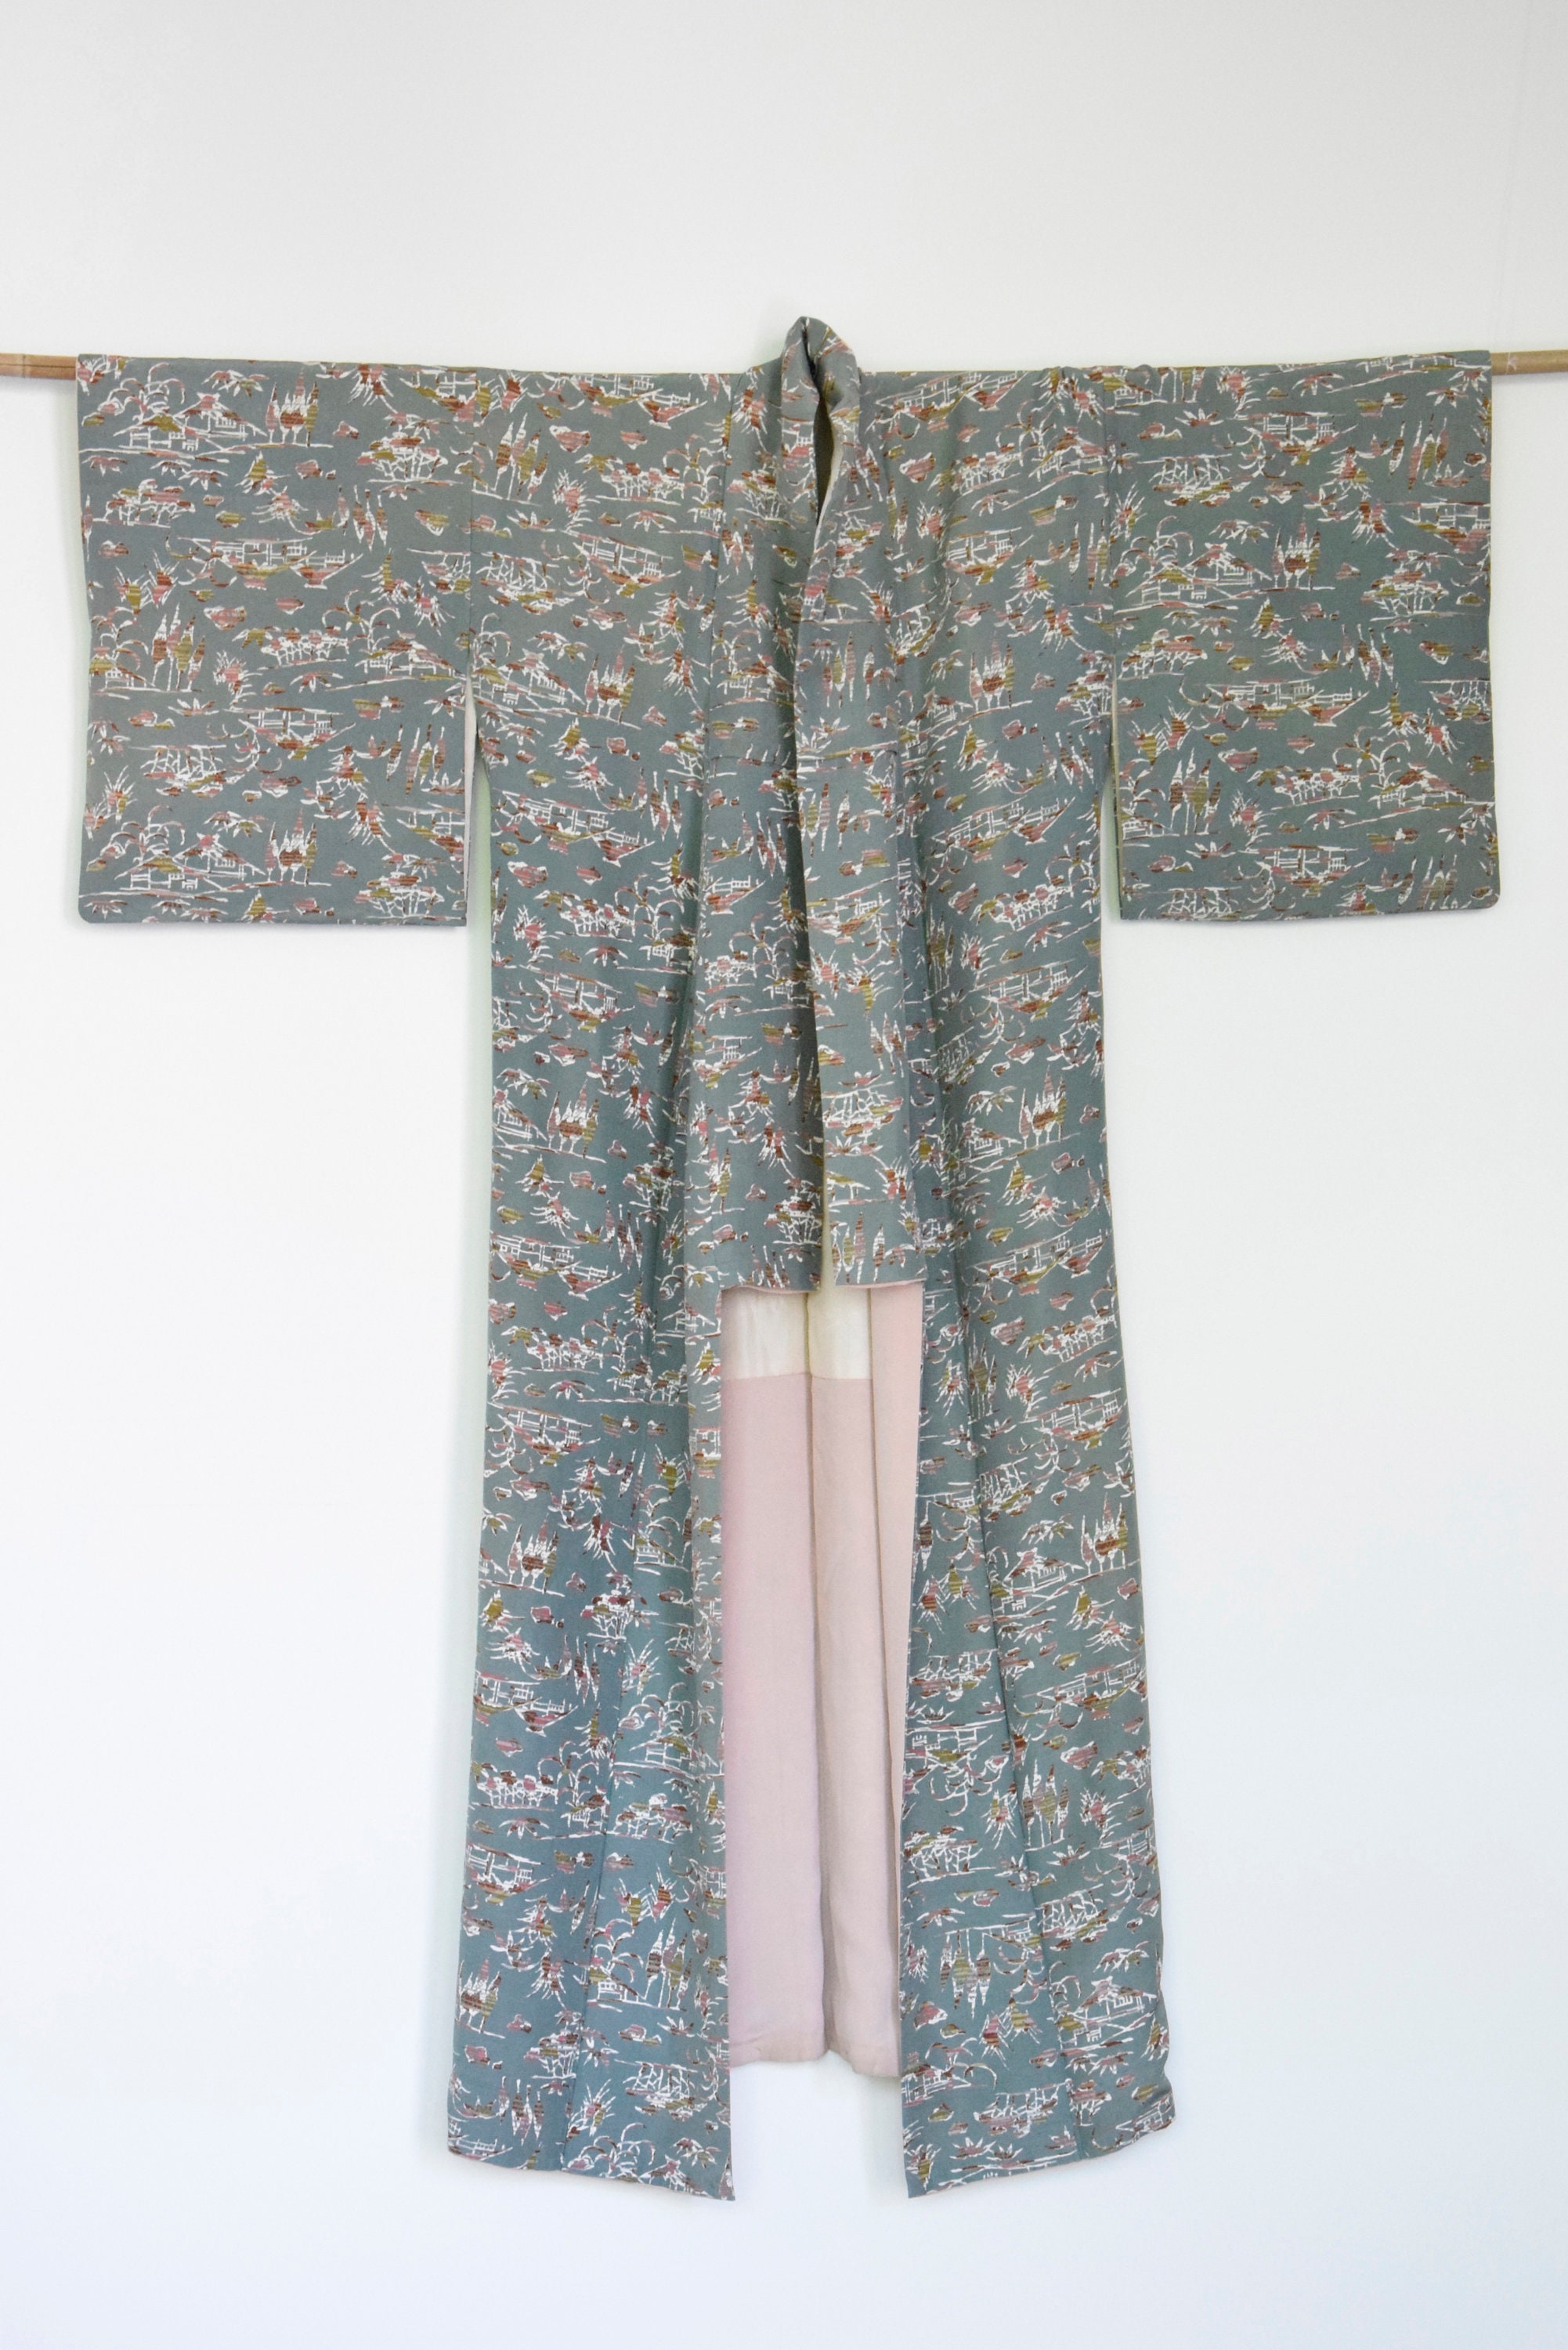 Vintage Silk Kimono blue with silk Obijime belt, Silk Kimono Robe ...